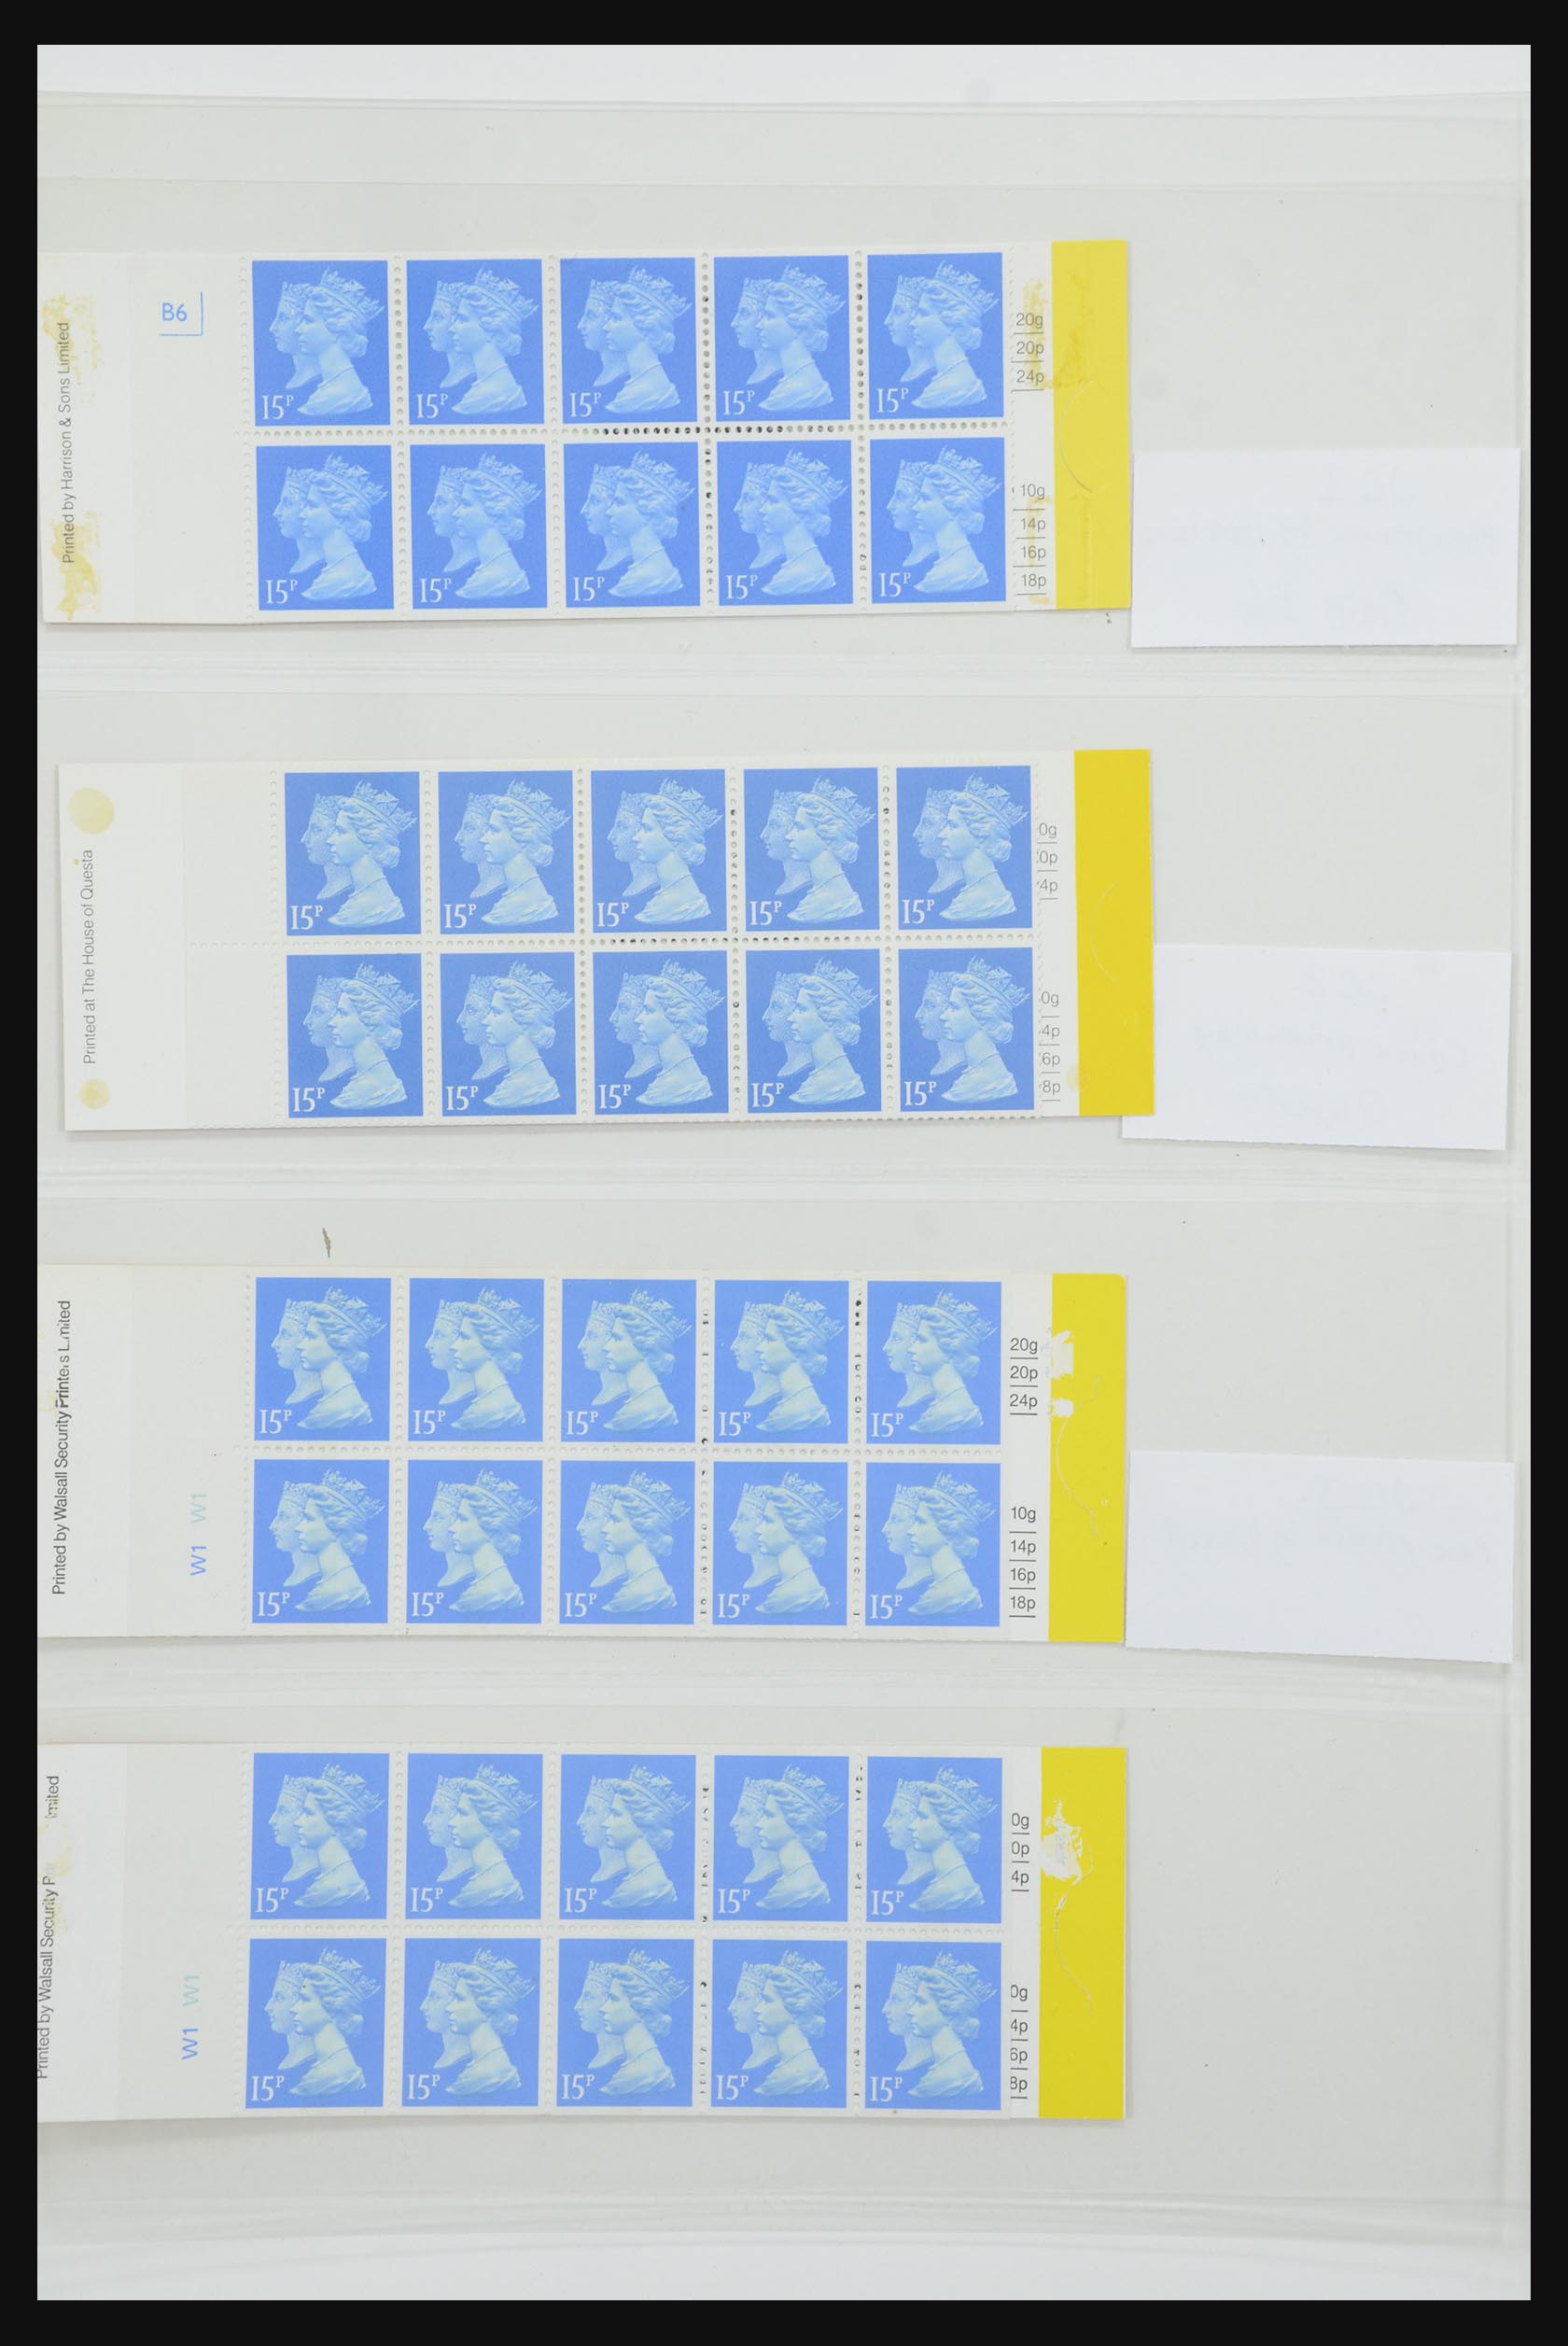 31959 268 - 31959 Engeland postzegelboekjes 1987-2016!!